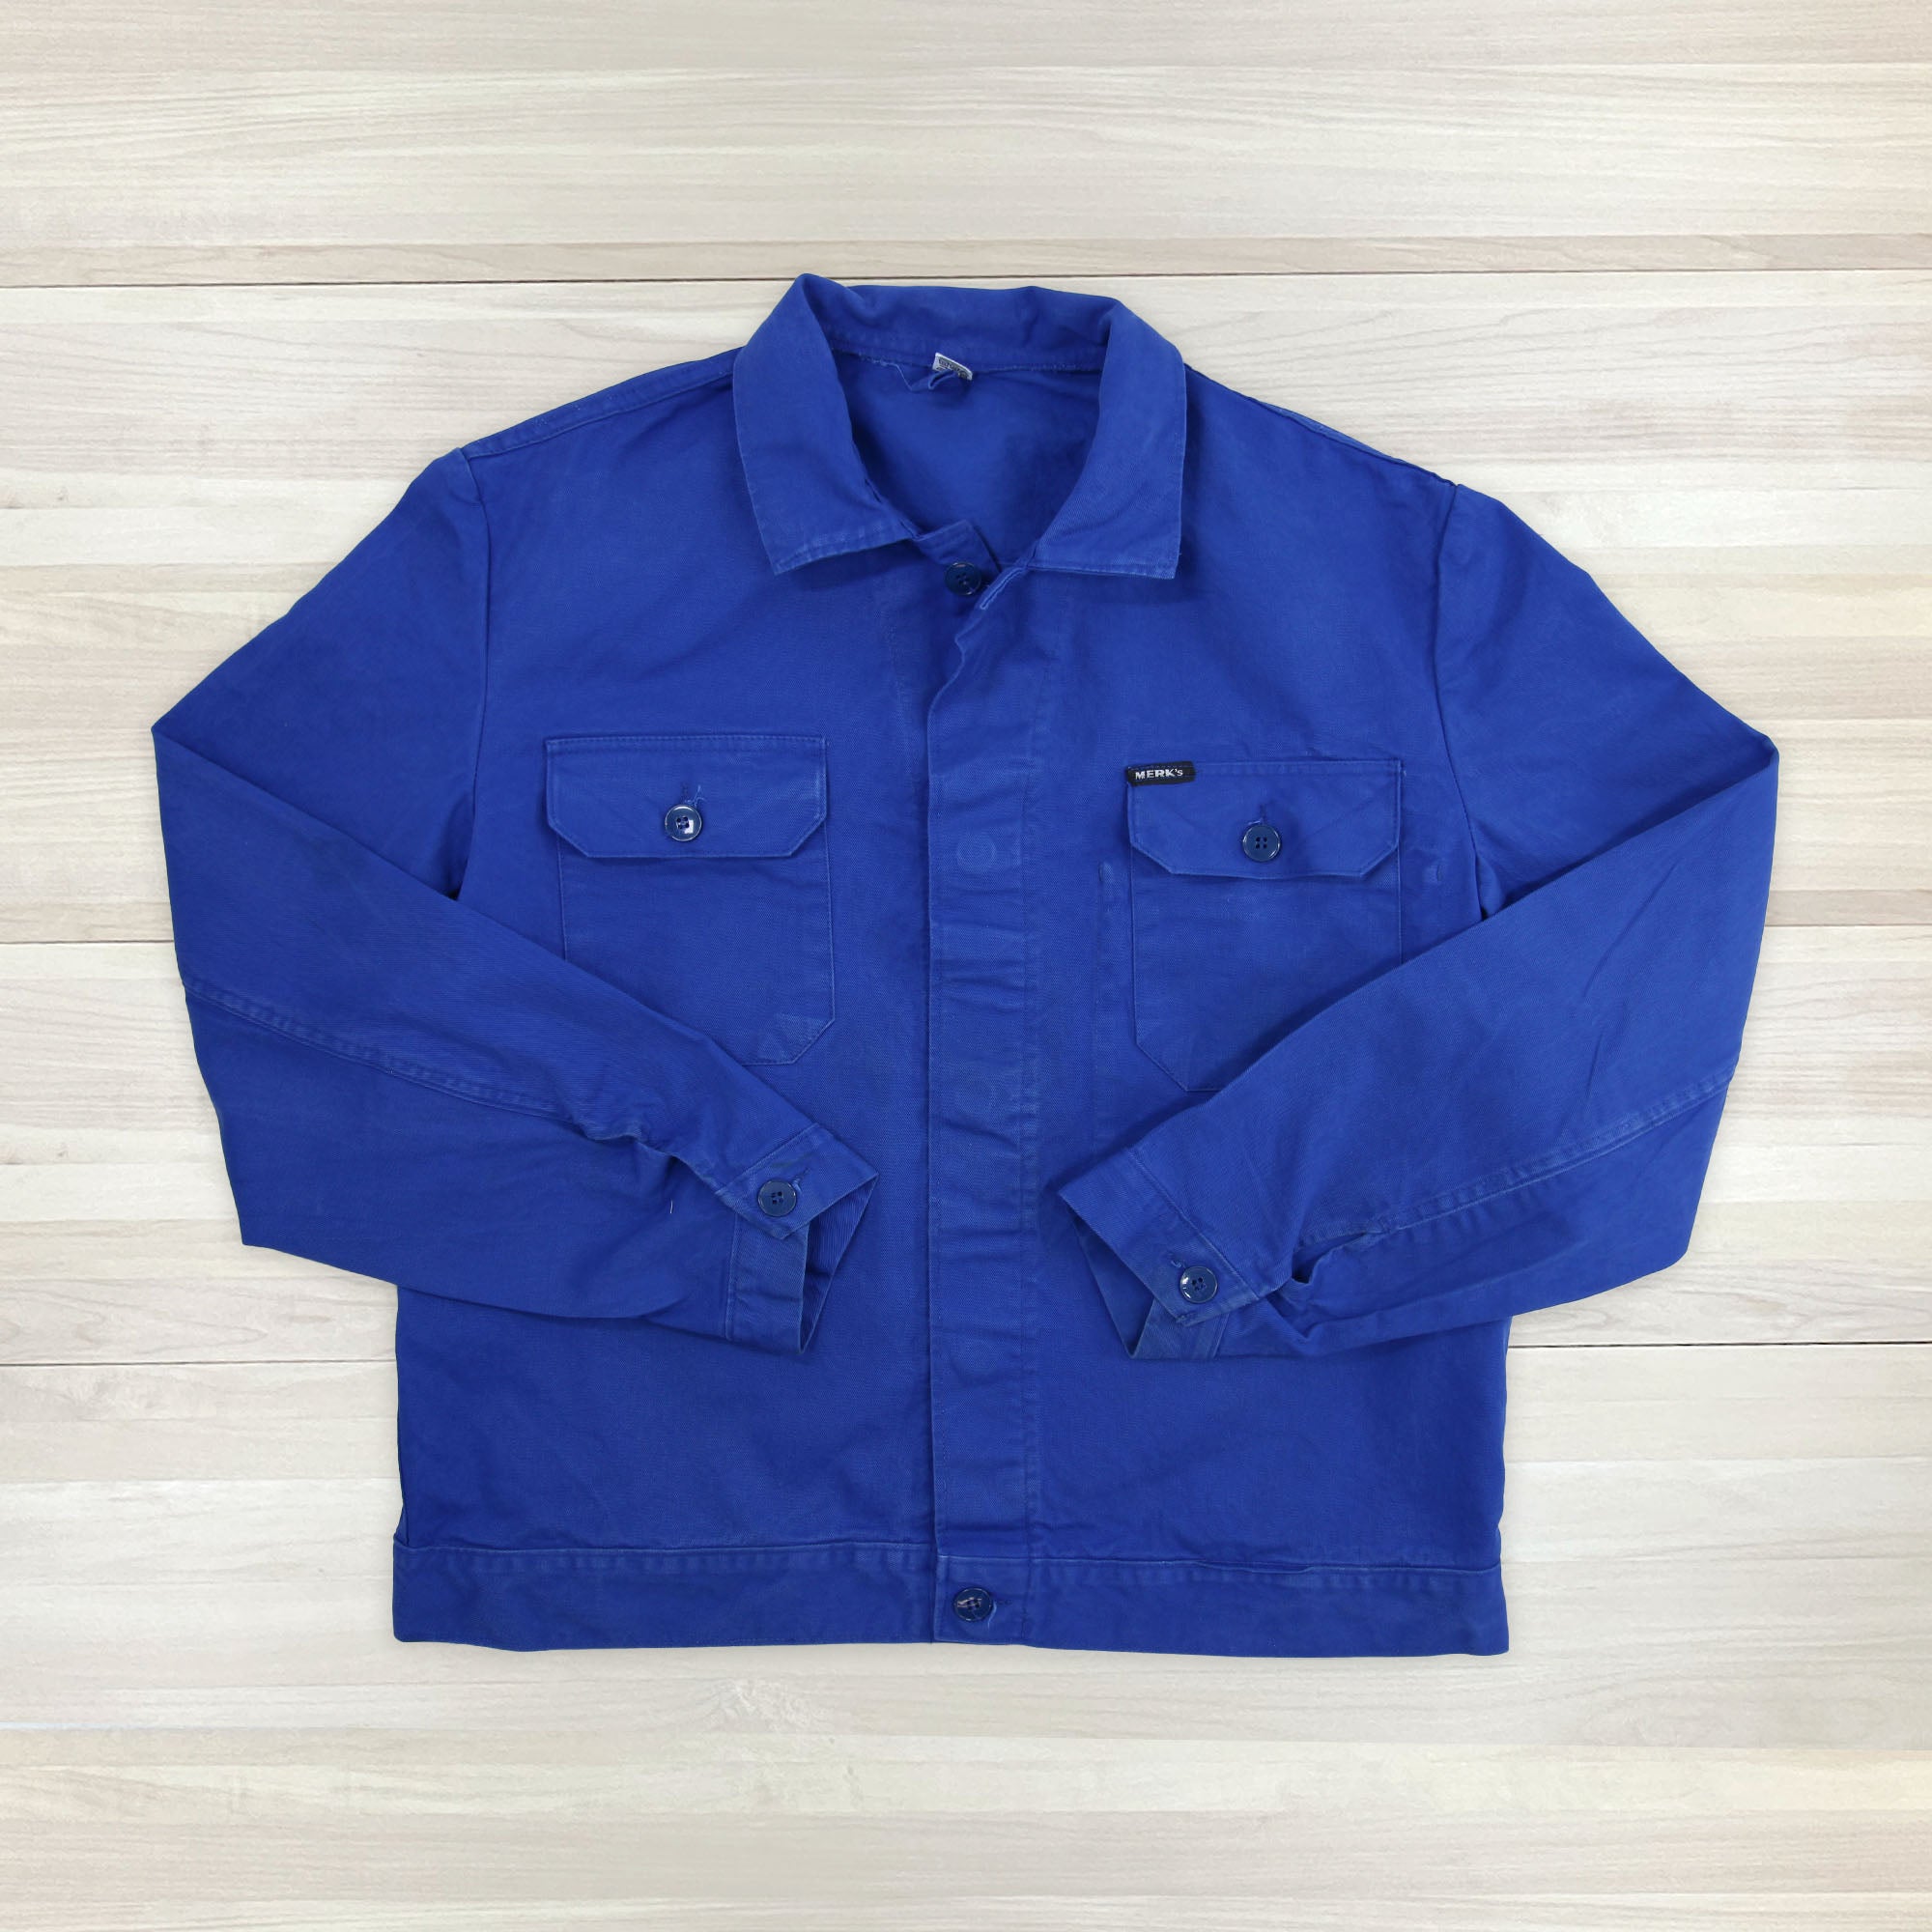 Thrashed Vintage Blue French Work Jacket - Men's Large